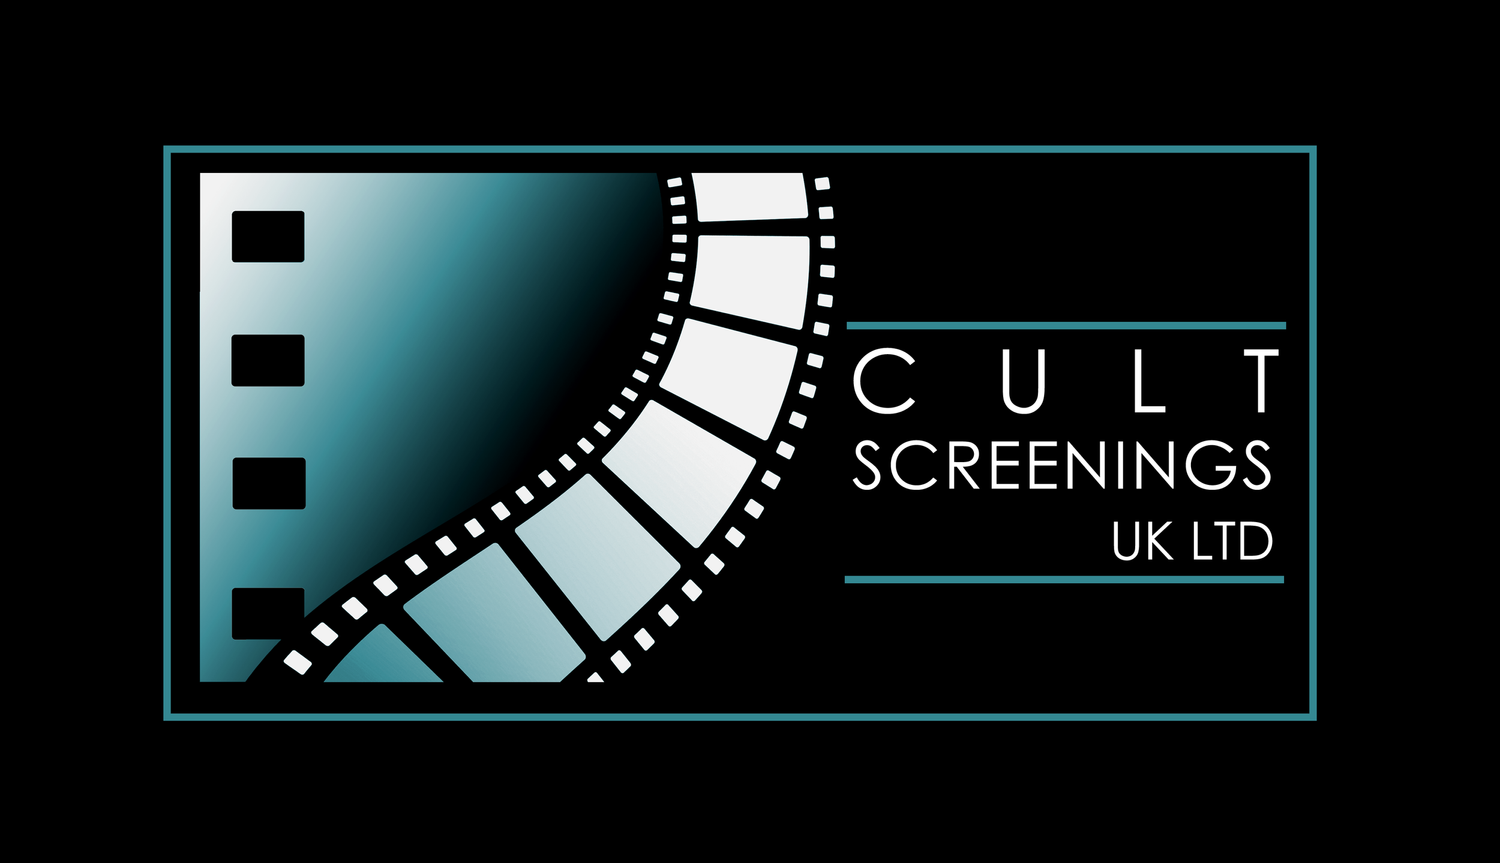 Cult Screenings UK Ltd